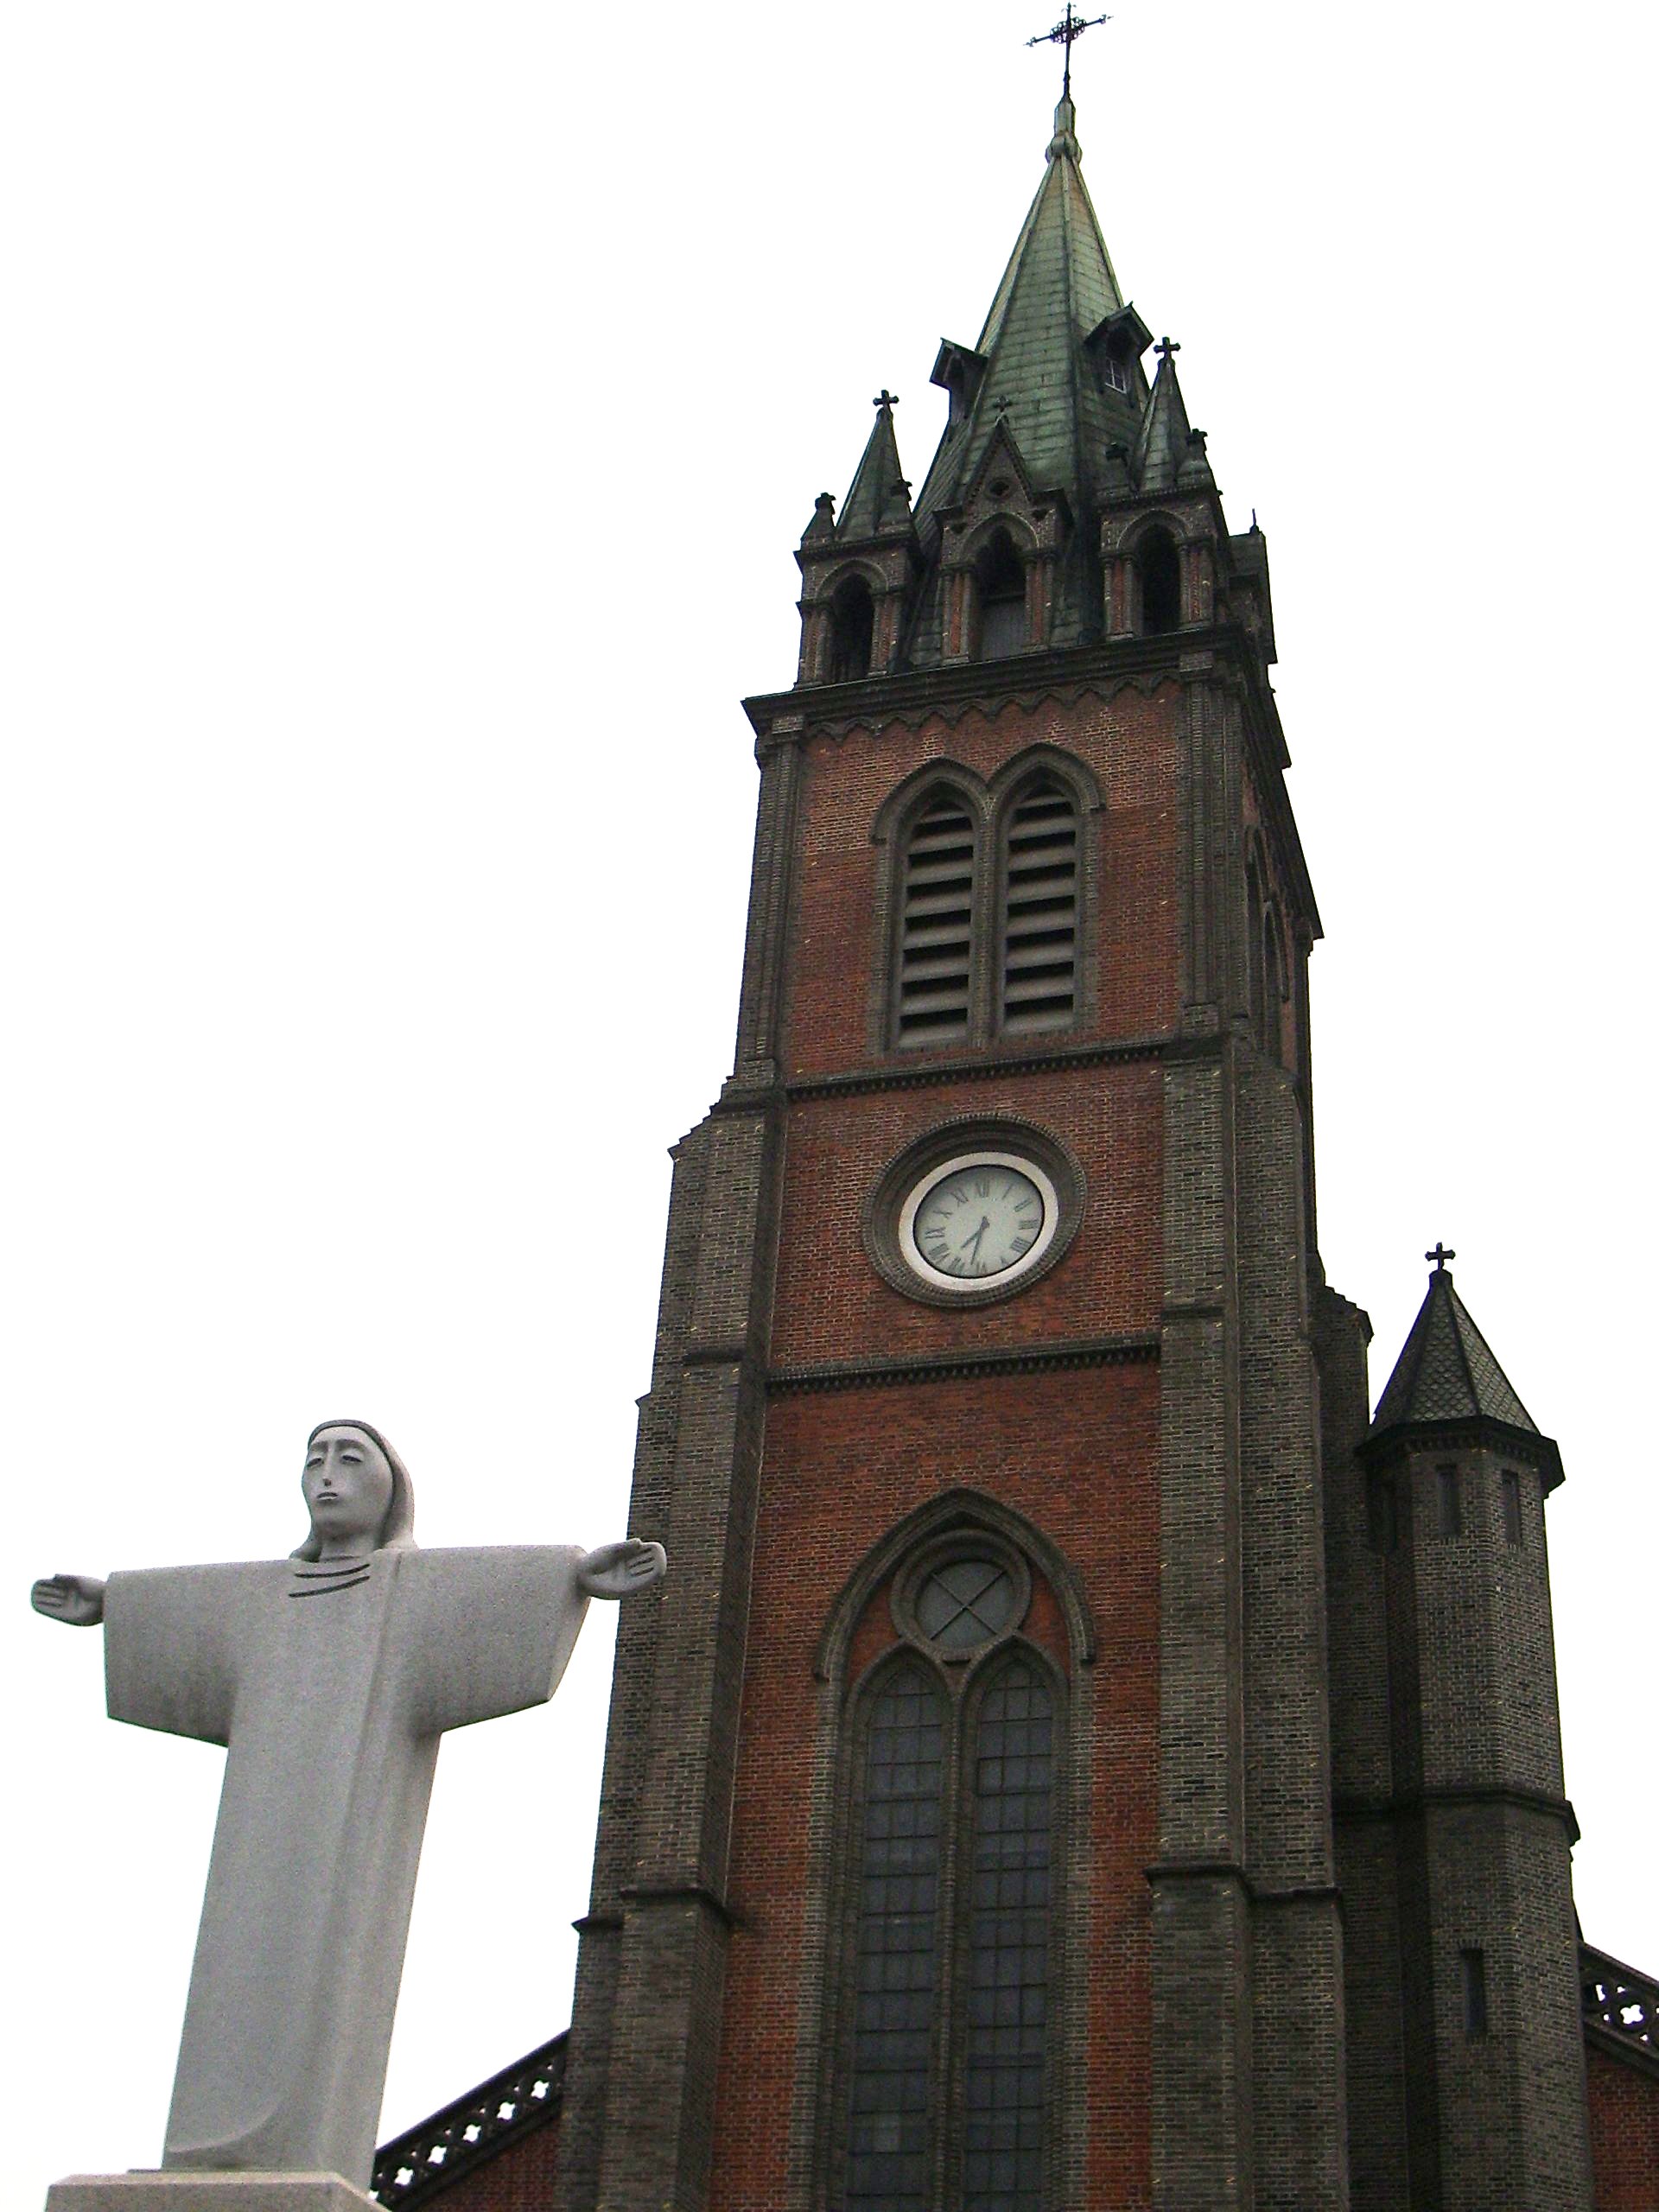 Catedral de San Juan (Seongnam) - Wikipedia, la enciclopedia libre